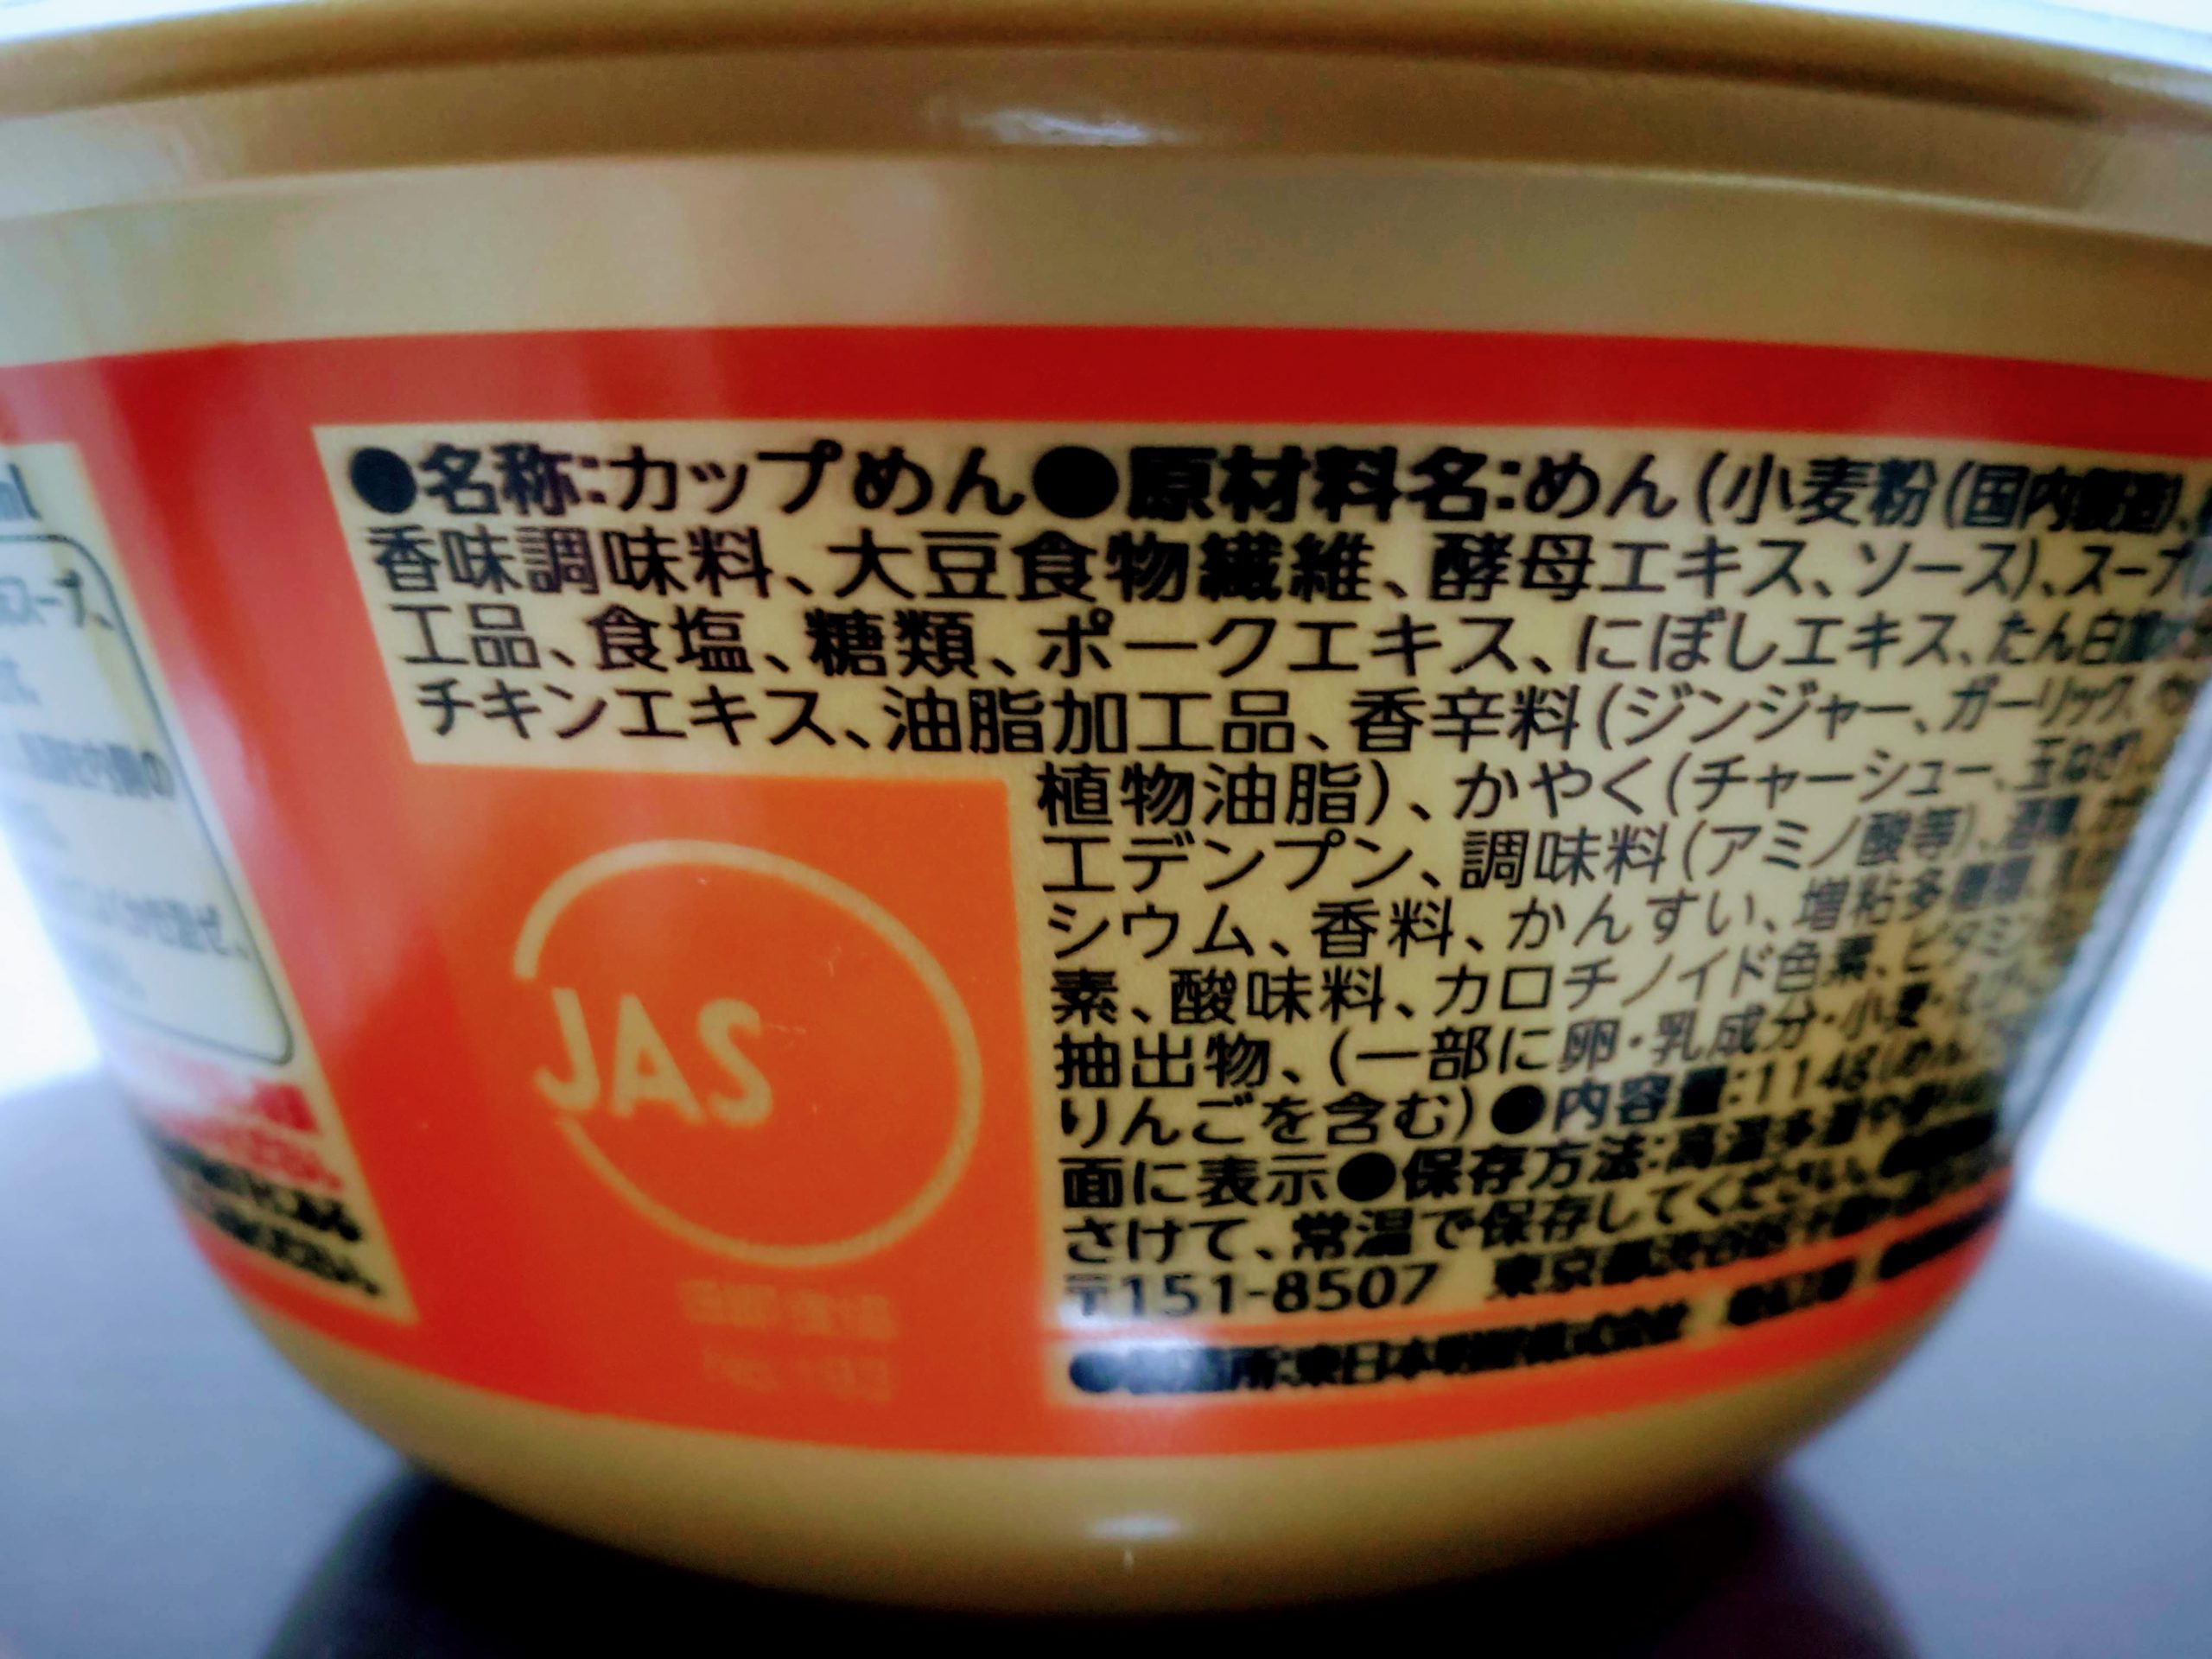 地域の名店 酒麺亭潤 燕三条系醤油ラーメンの食品表示